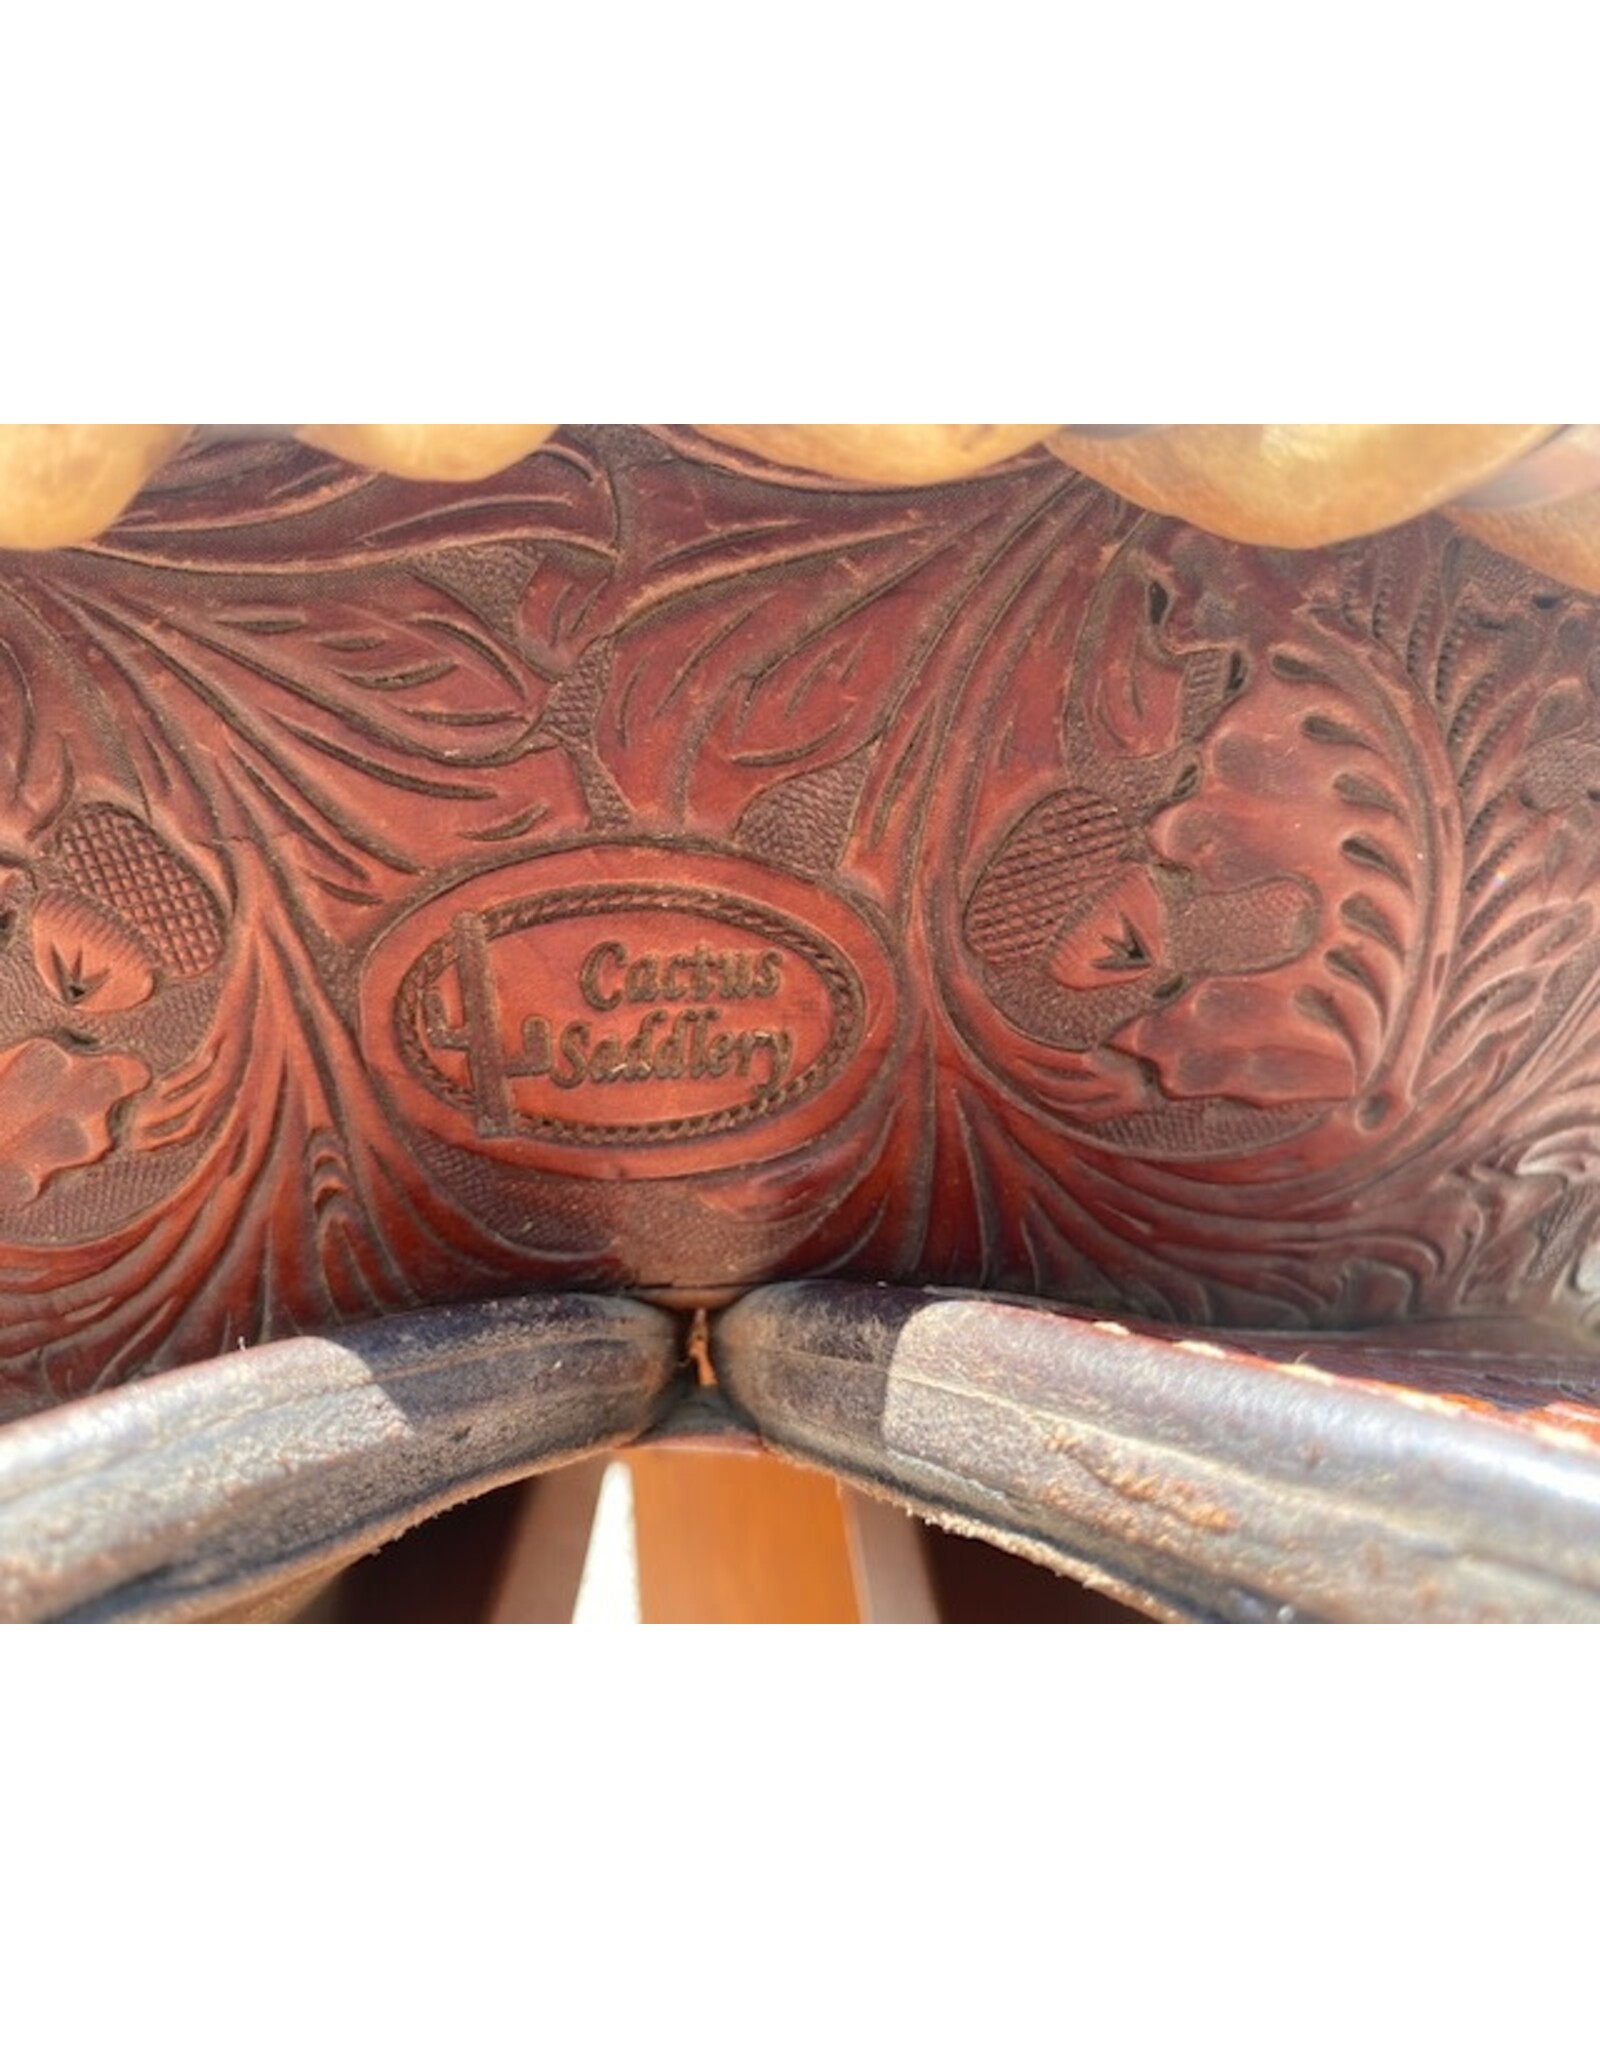 Charmayne James Cactus Saddlery Barrel Saddle with Stingray Seat 14.5" Full Quarter Bars